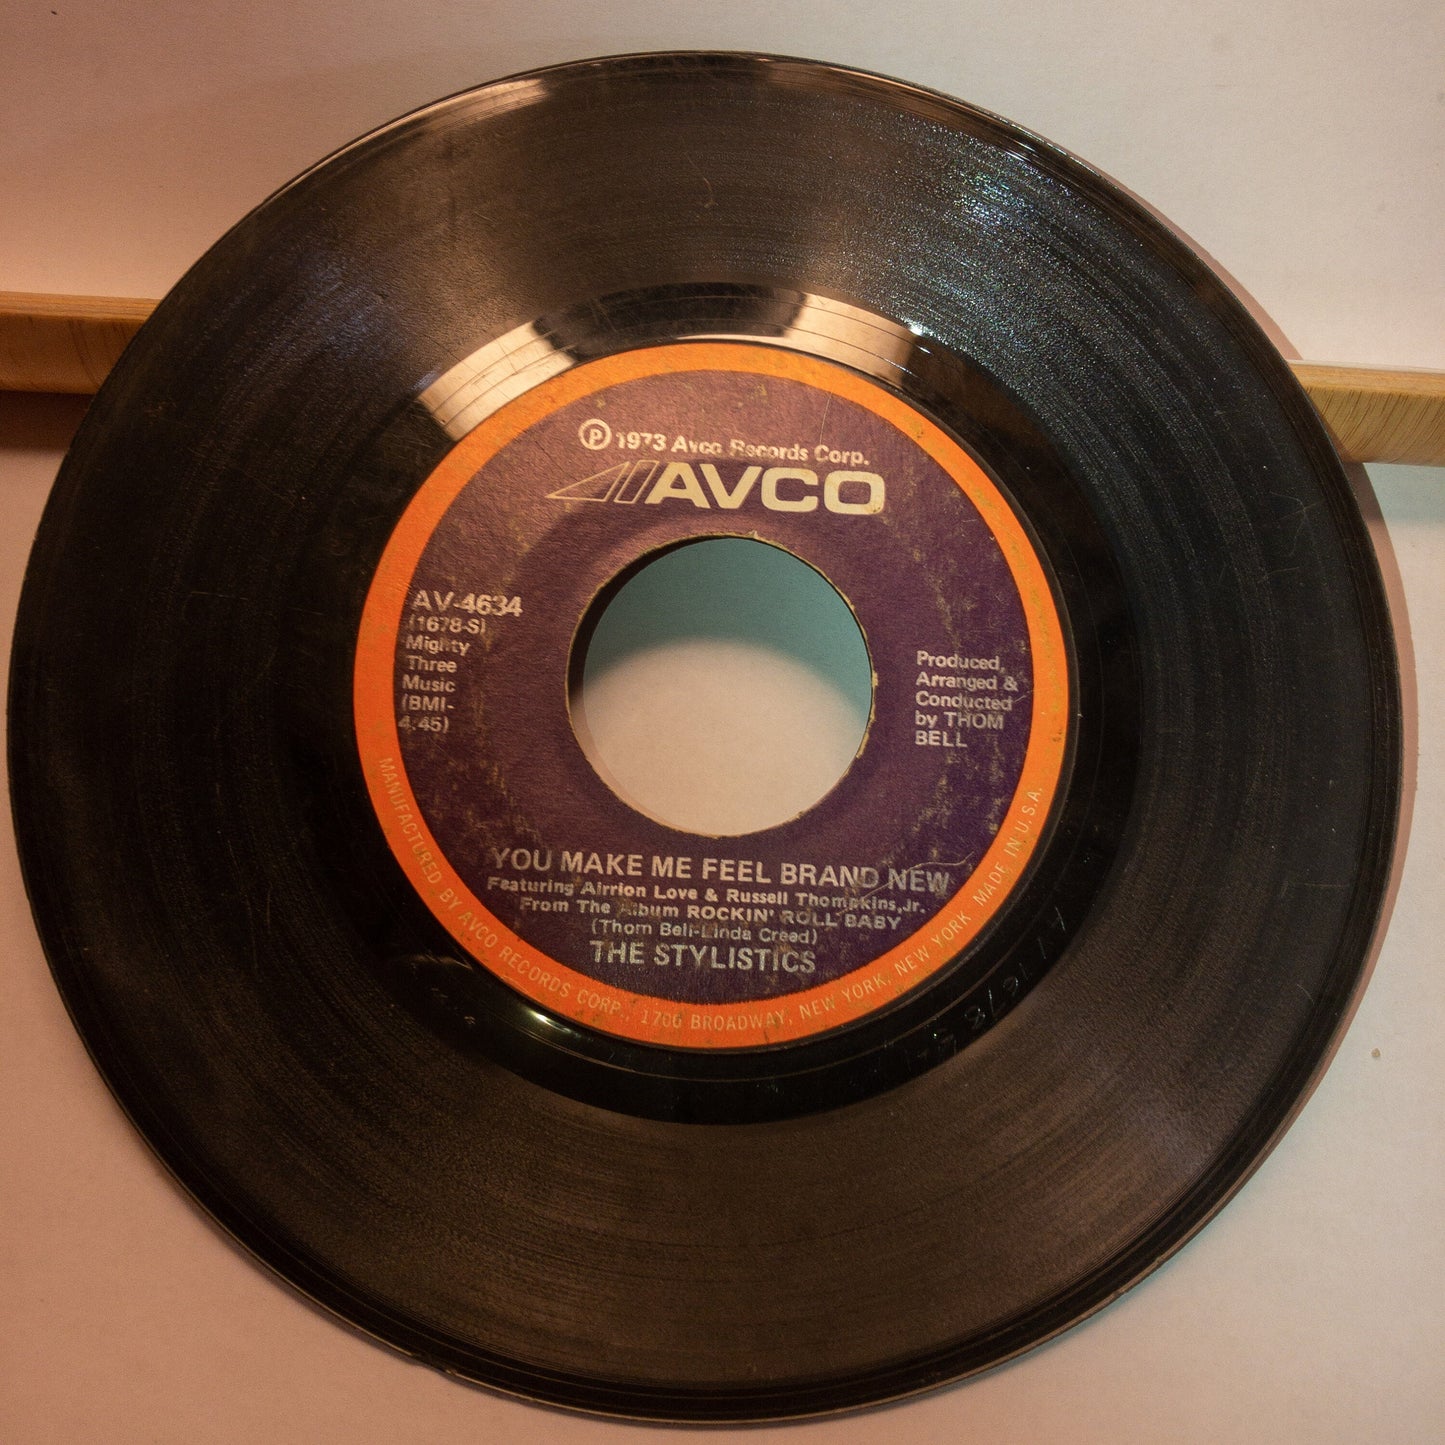 Classic Vinyl 45 RPM Records, Set of 9, 1970s Classics, See Description*